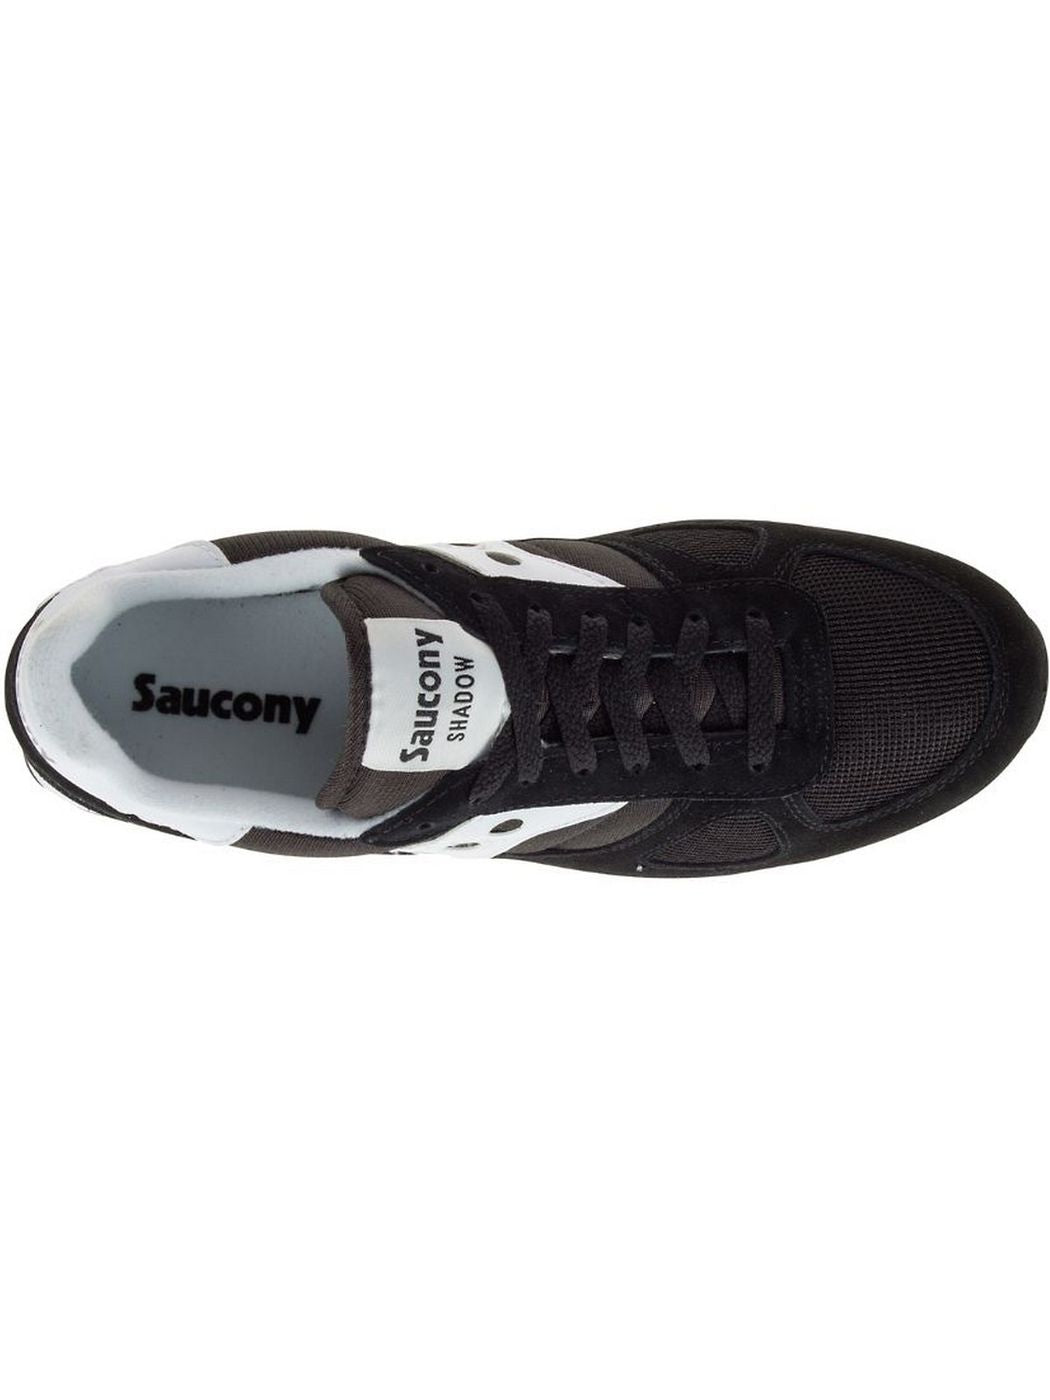 SAUCONY Sneaker Unisex adulte Shadow original 2108 Noir